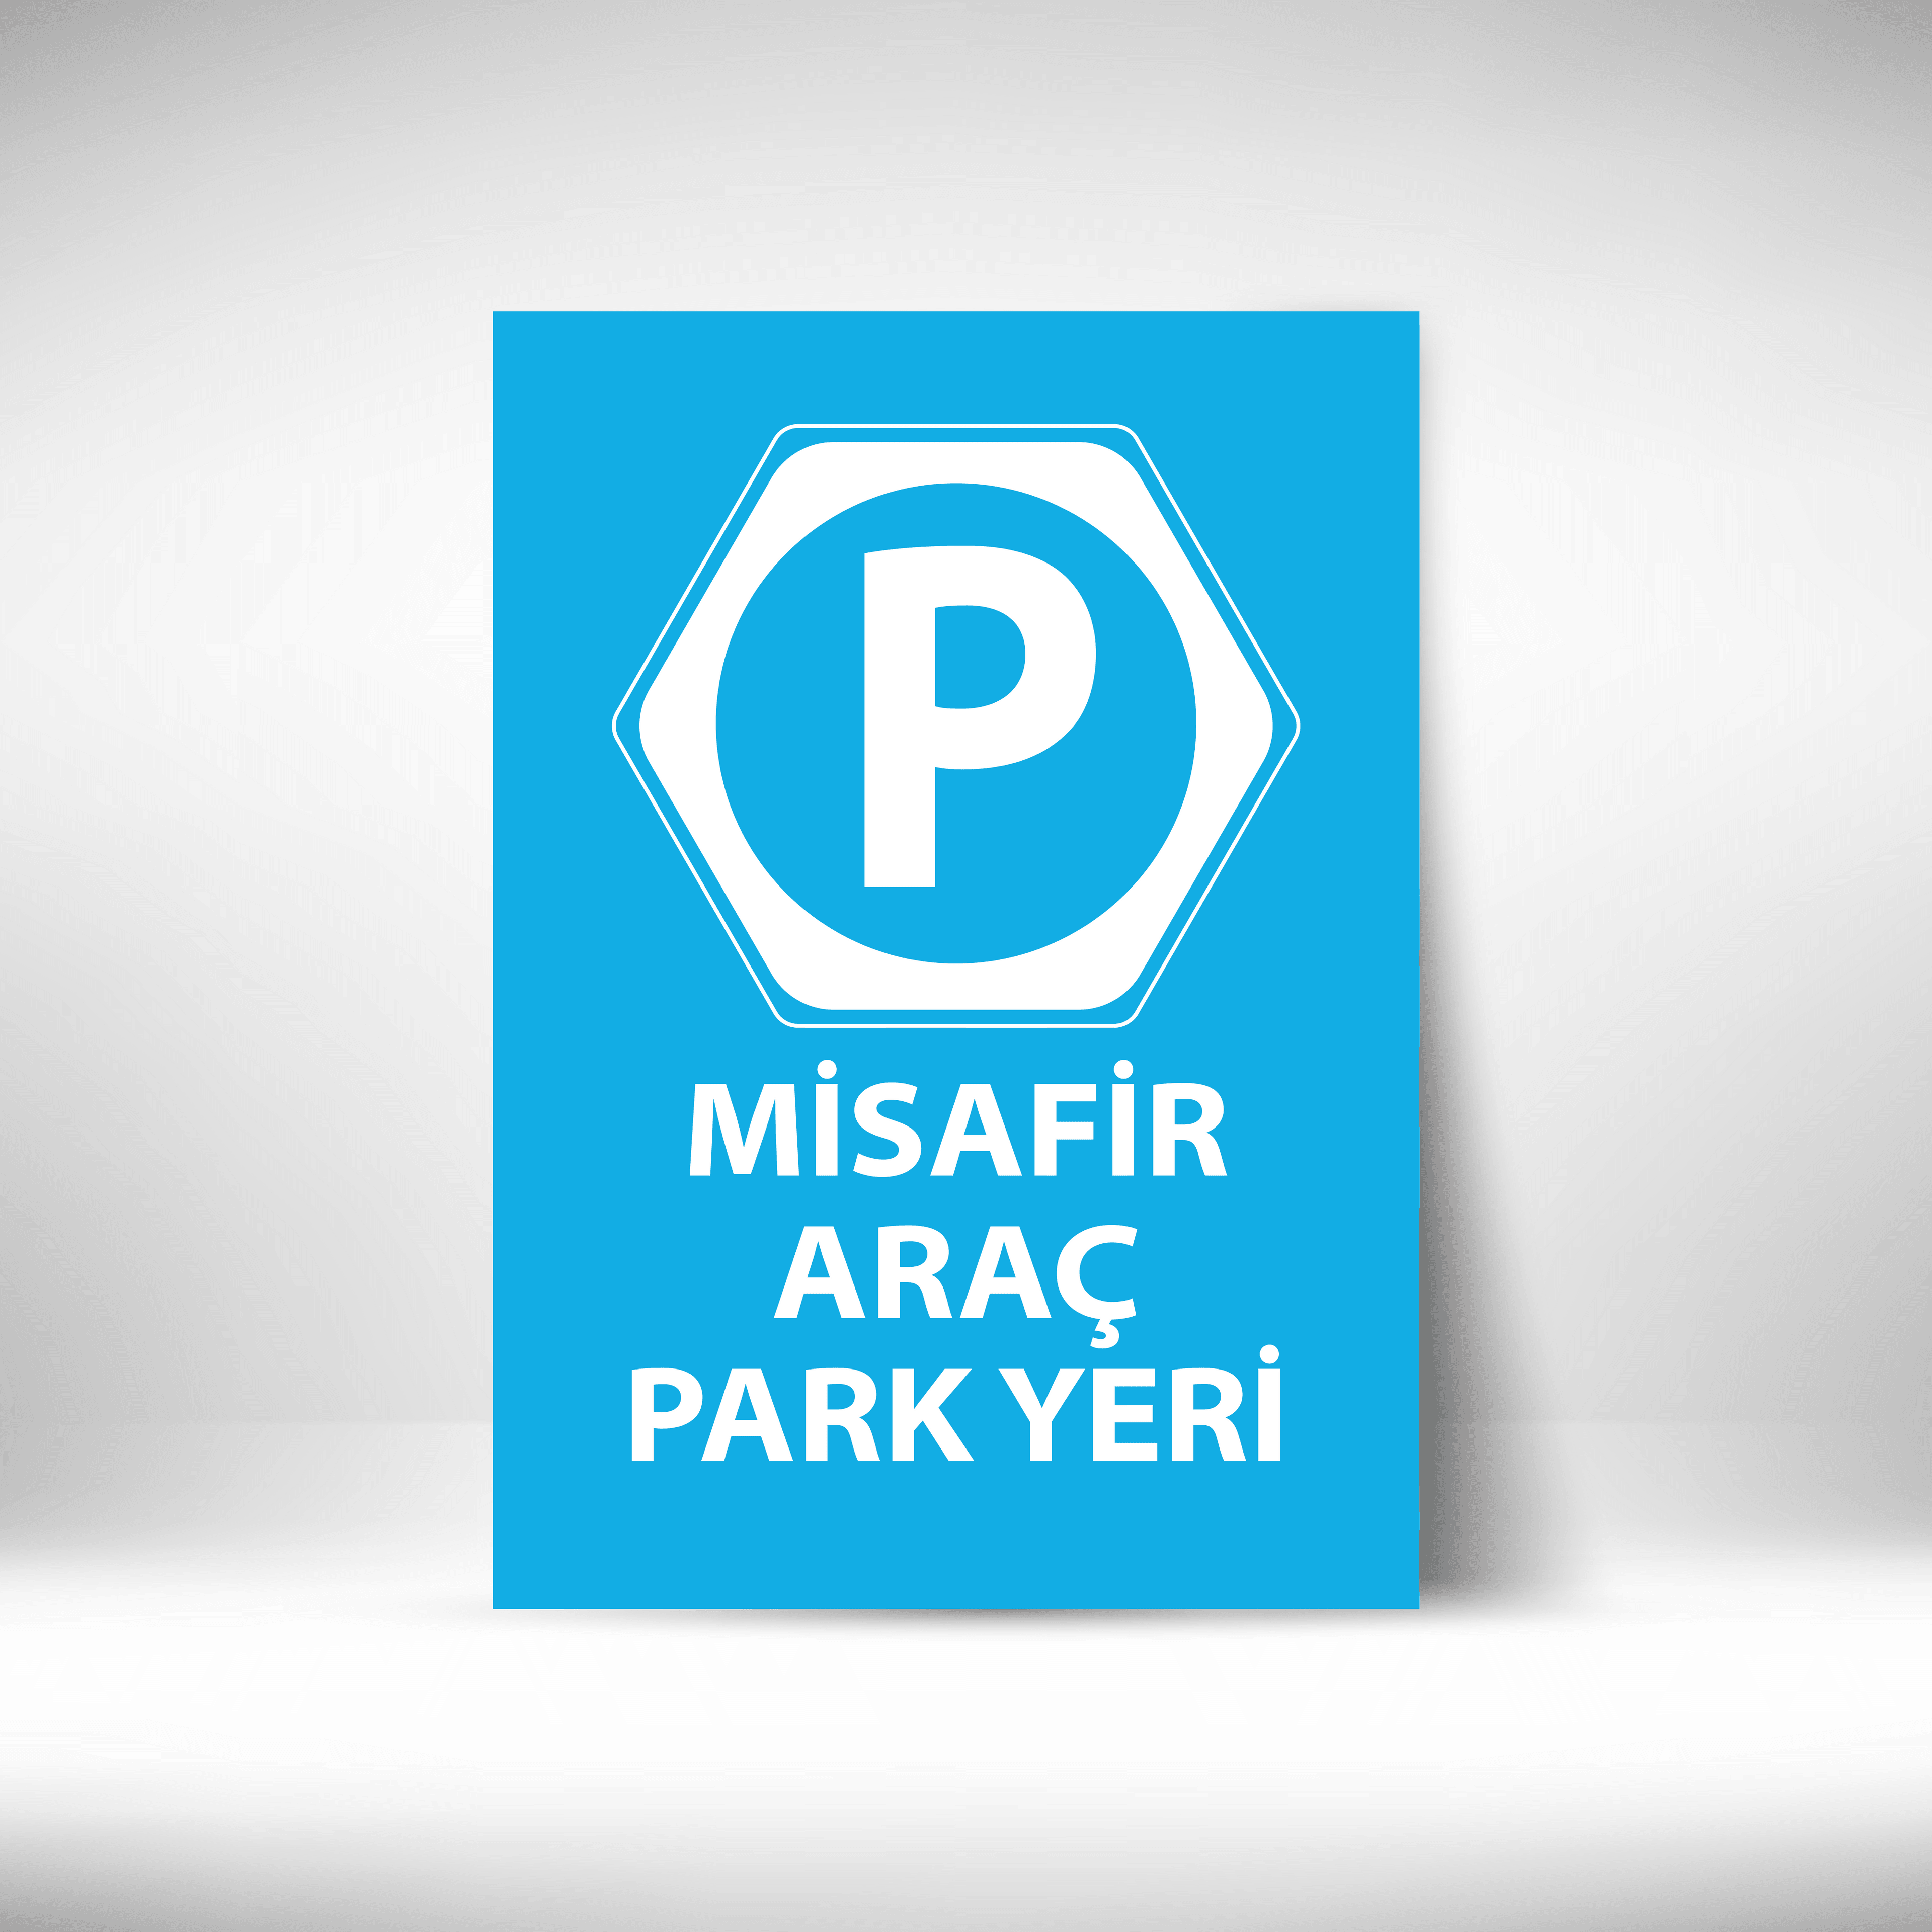 Misafir Araç Park Yeri main variant image